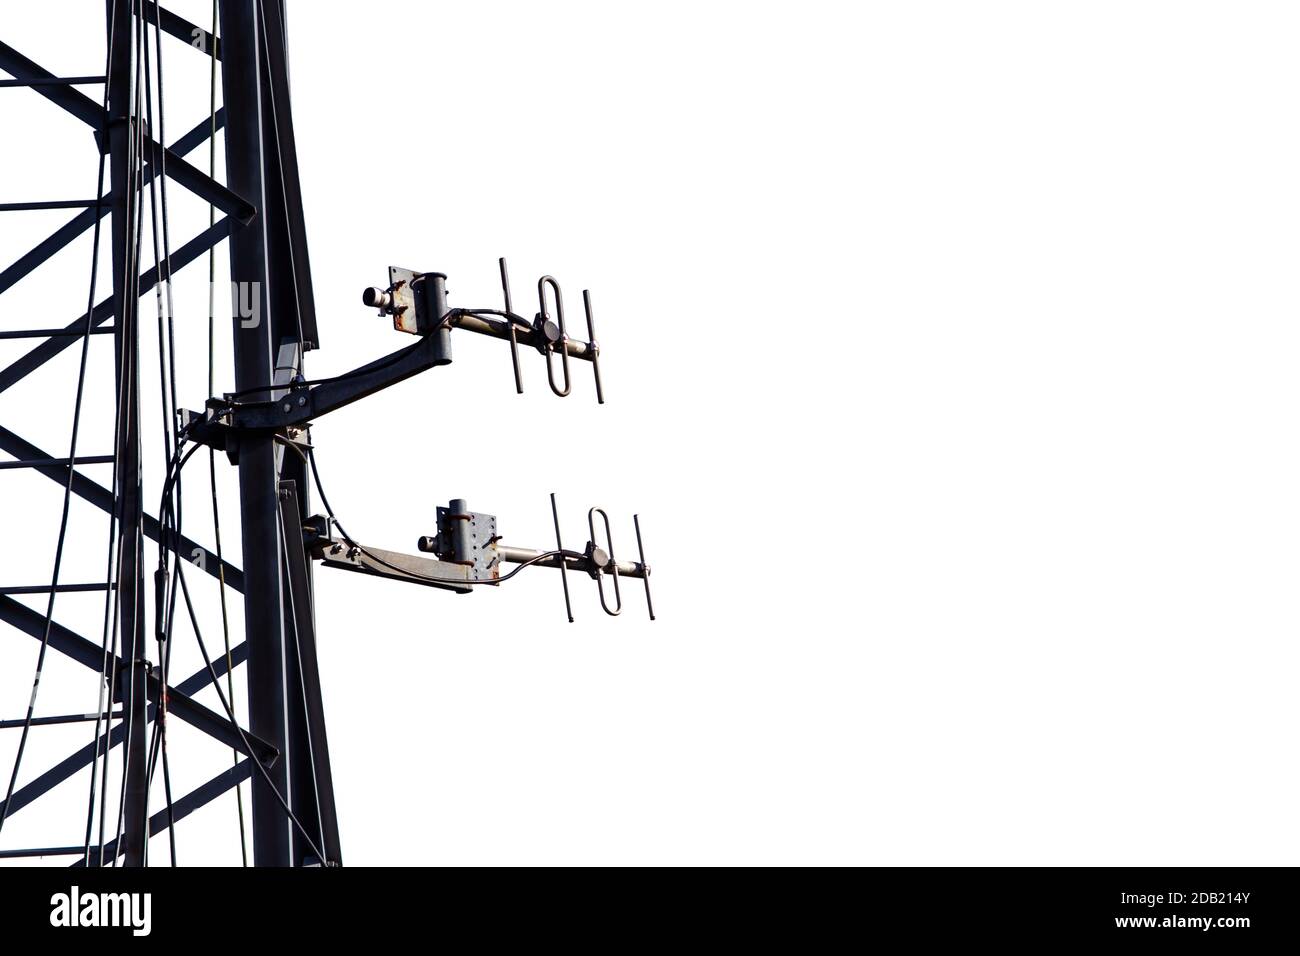 Antenne per telecomunicazioni isolate sul palo metallico silhouette nera su bianco Foto Stock